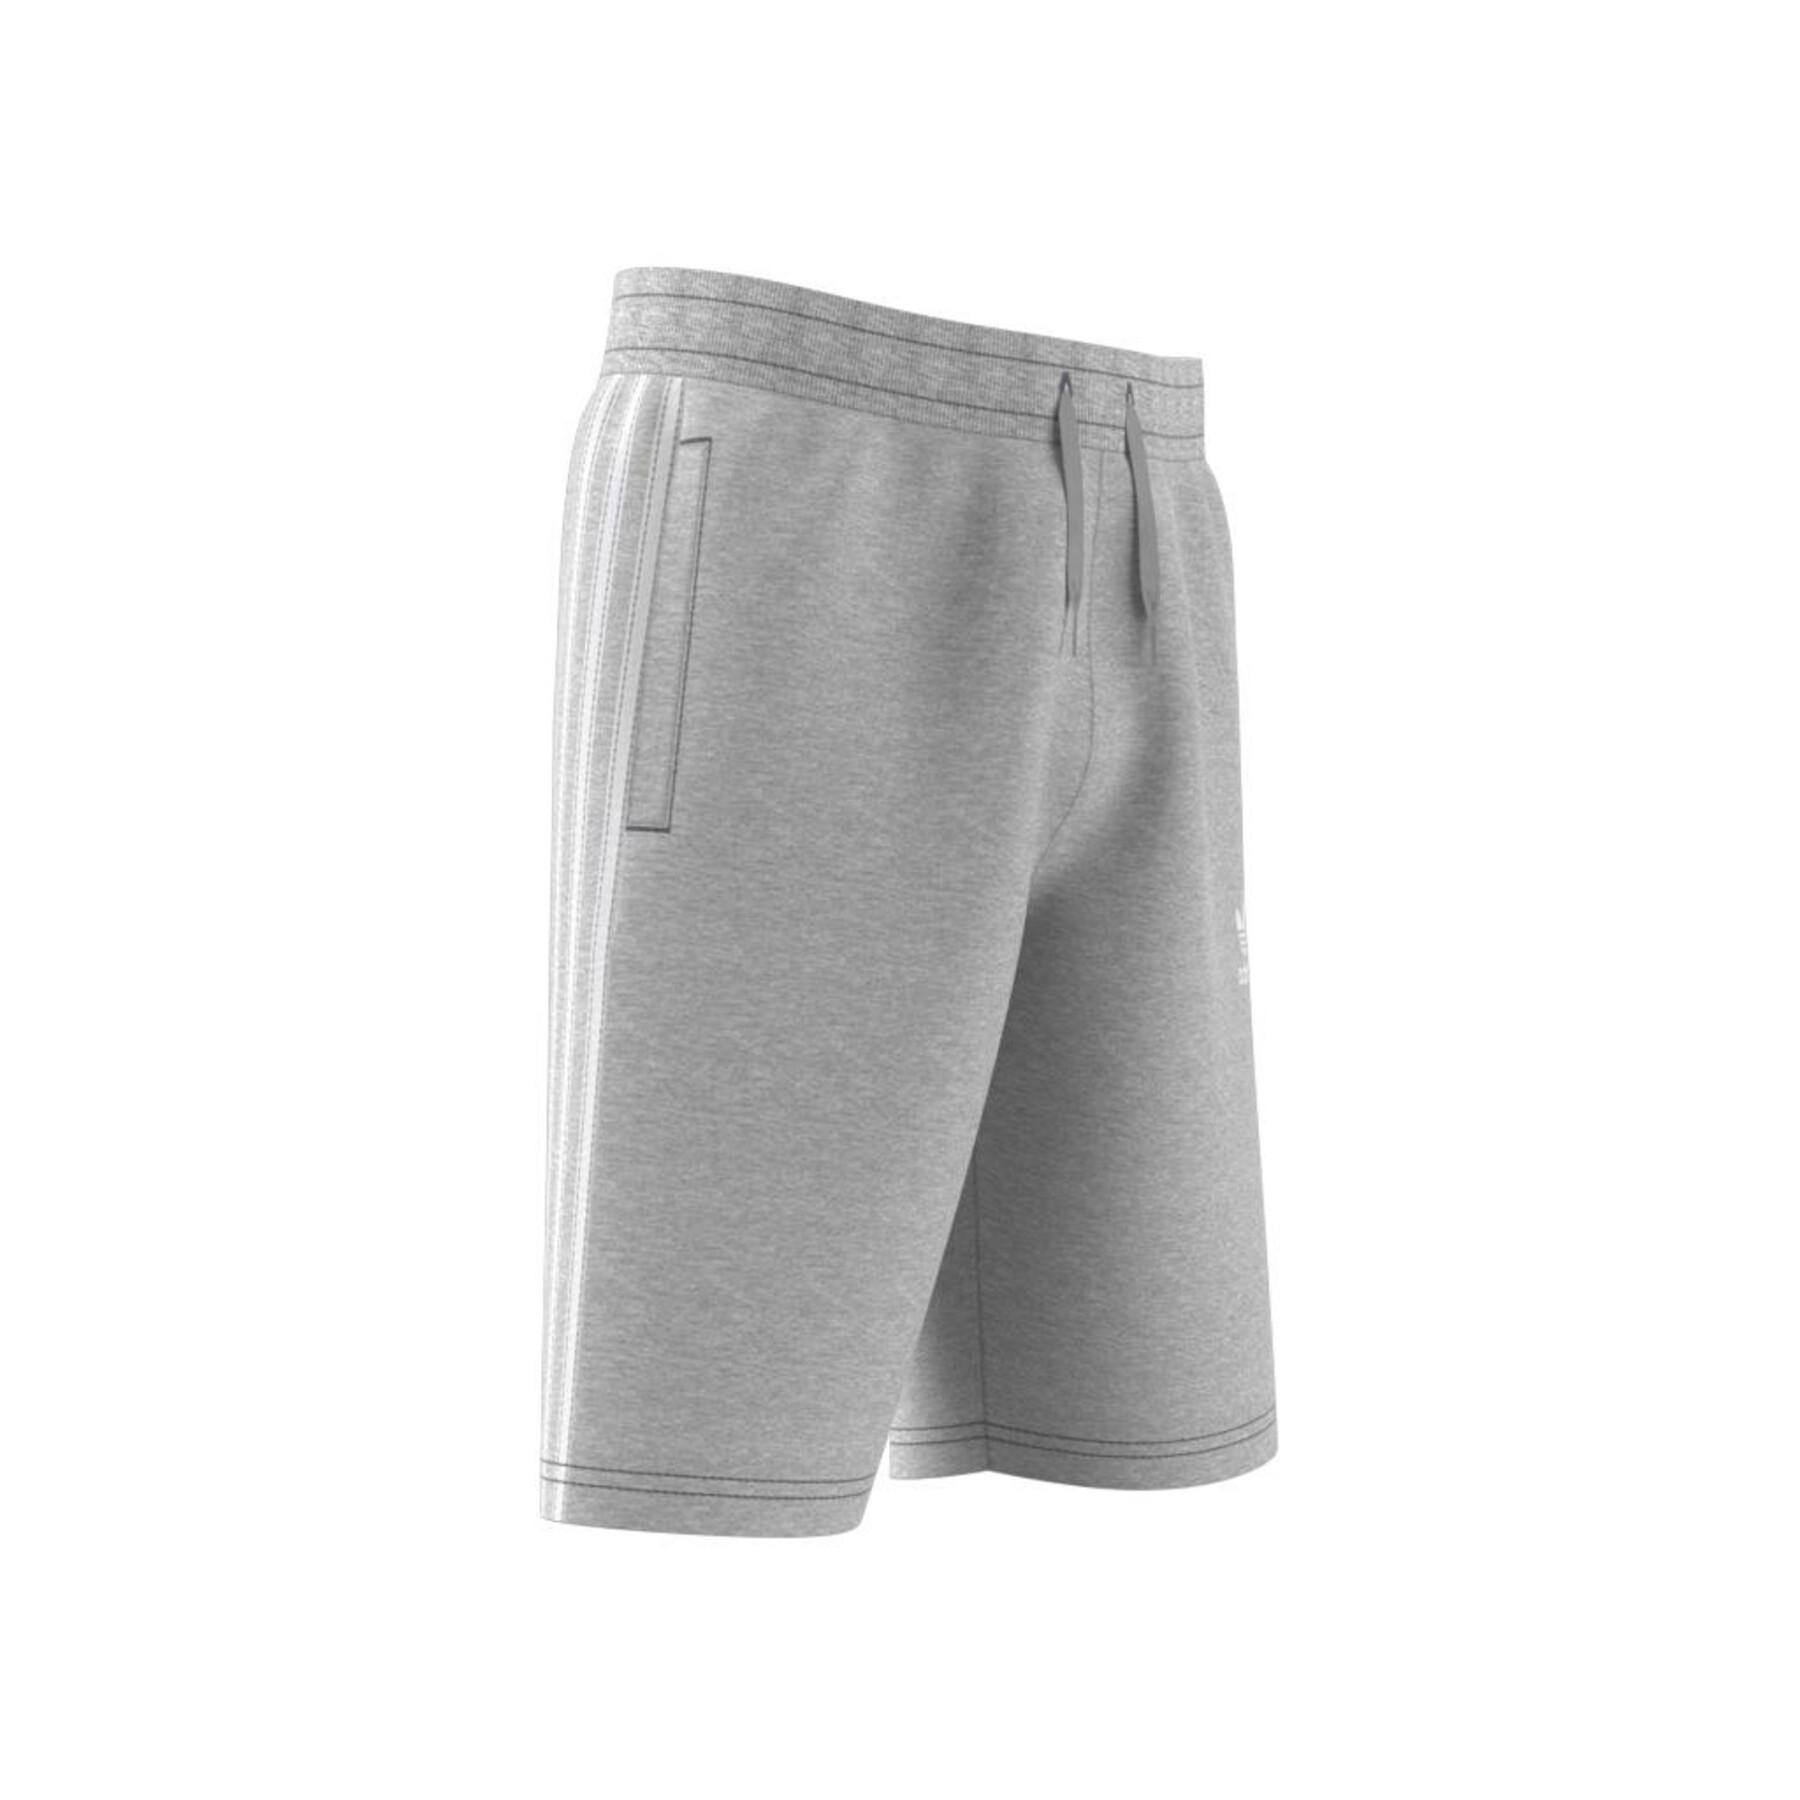 Pantalones cortos para niños adidas Originals Adicolor